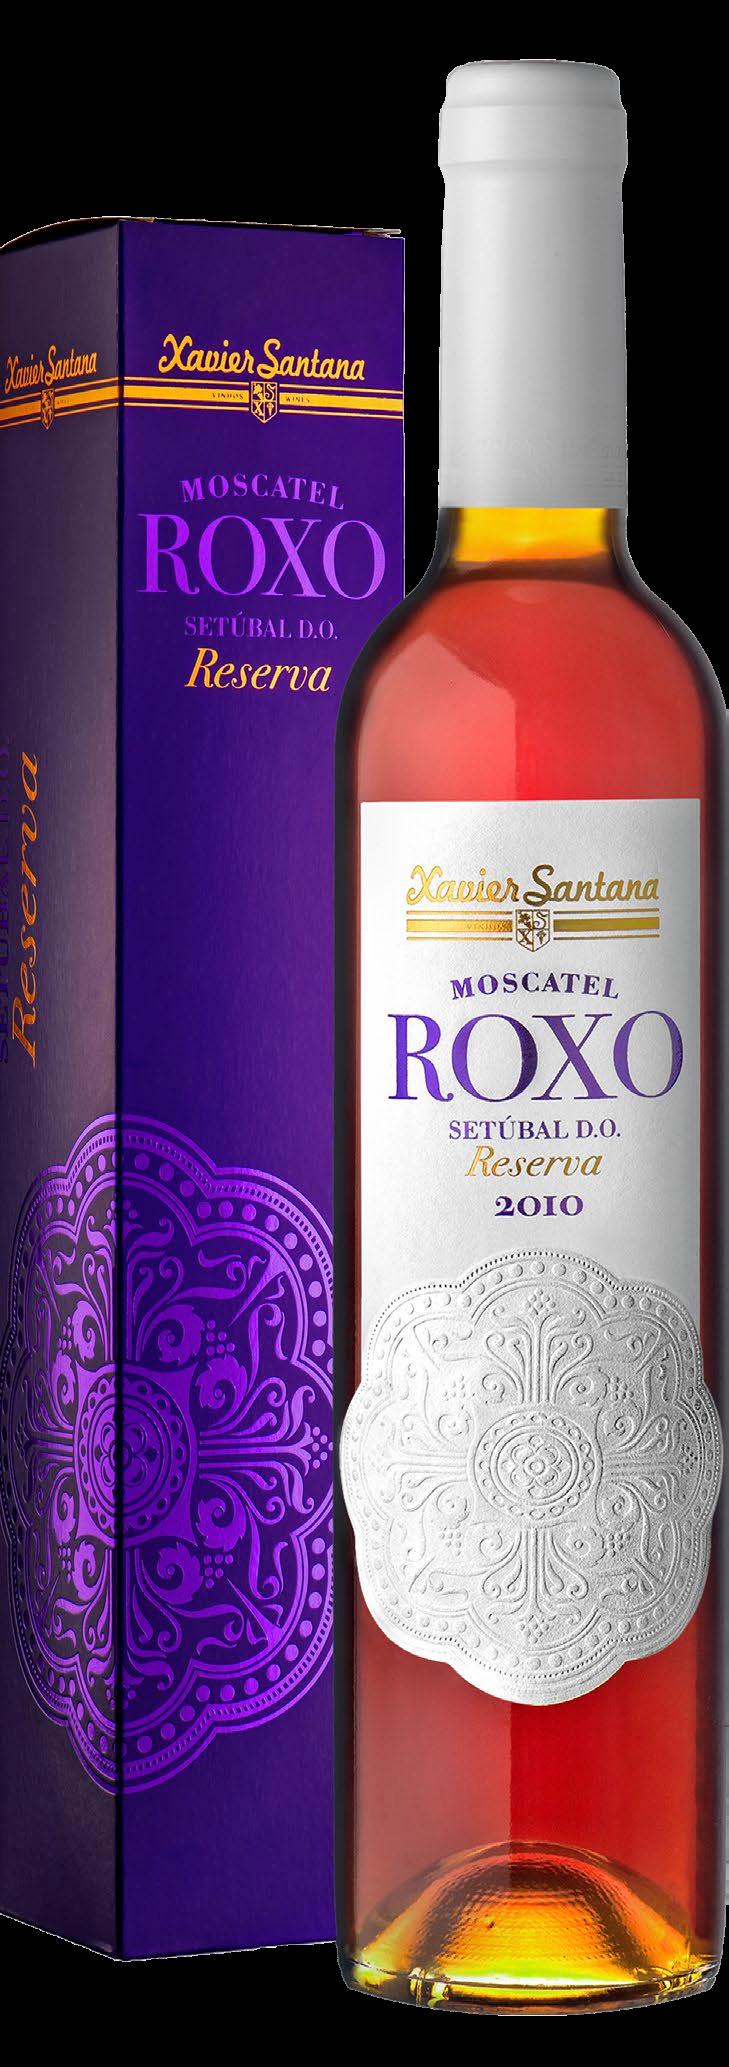 O nosso vinho generoso Moscatel Roxo de Setúbal Reserva é uma raridade na sua própria categoria, que apresenta uma riqueza e complexidade de aromas e sabores adocicados, muito característicos à casta